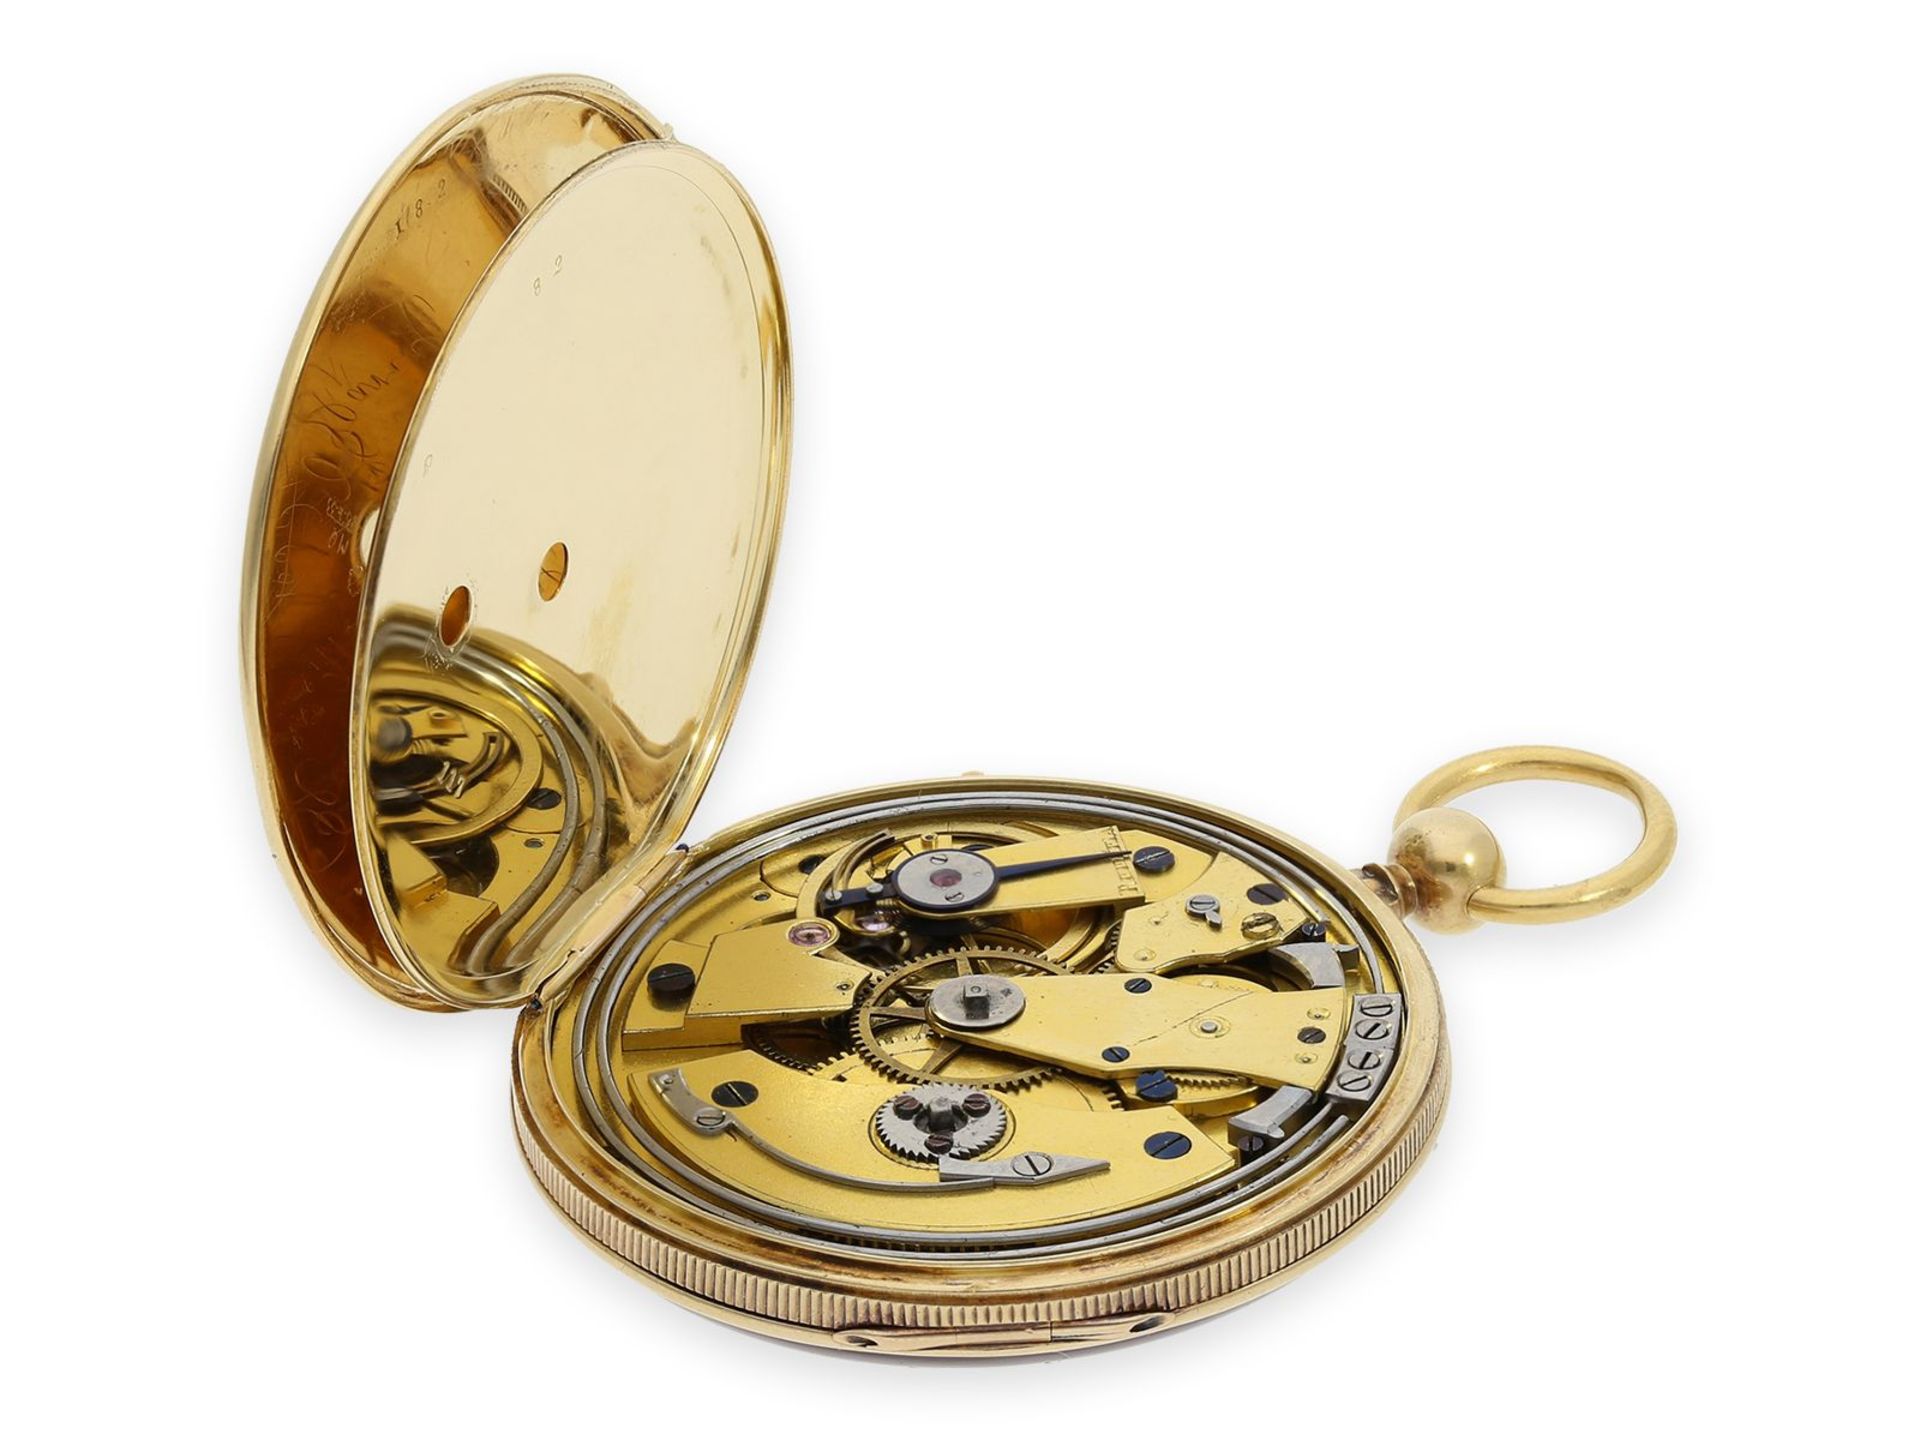 Taschenuhr: französische Lepine von sehr feiner Qualität mit Schlagwerk, königlicher Uhrmacher - Bild 3 aus 6